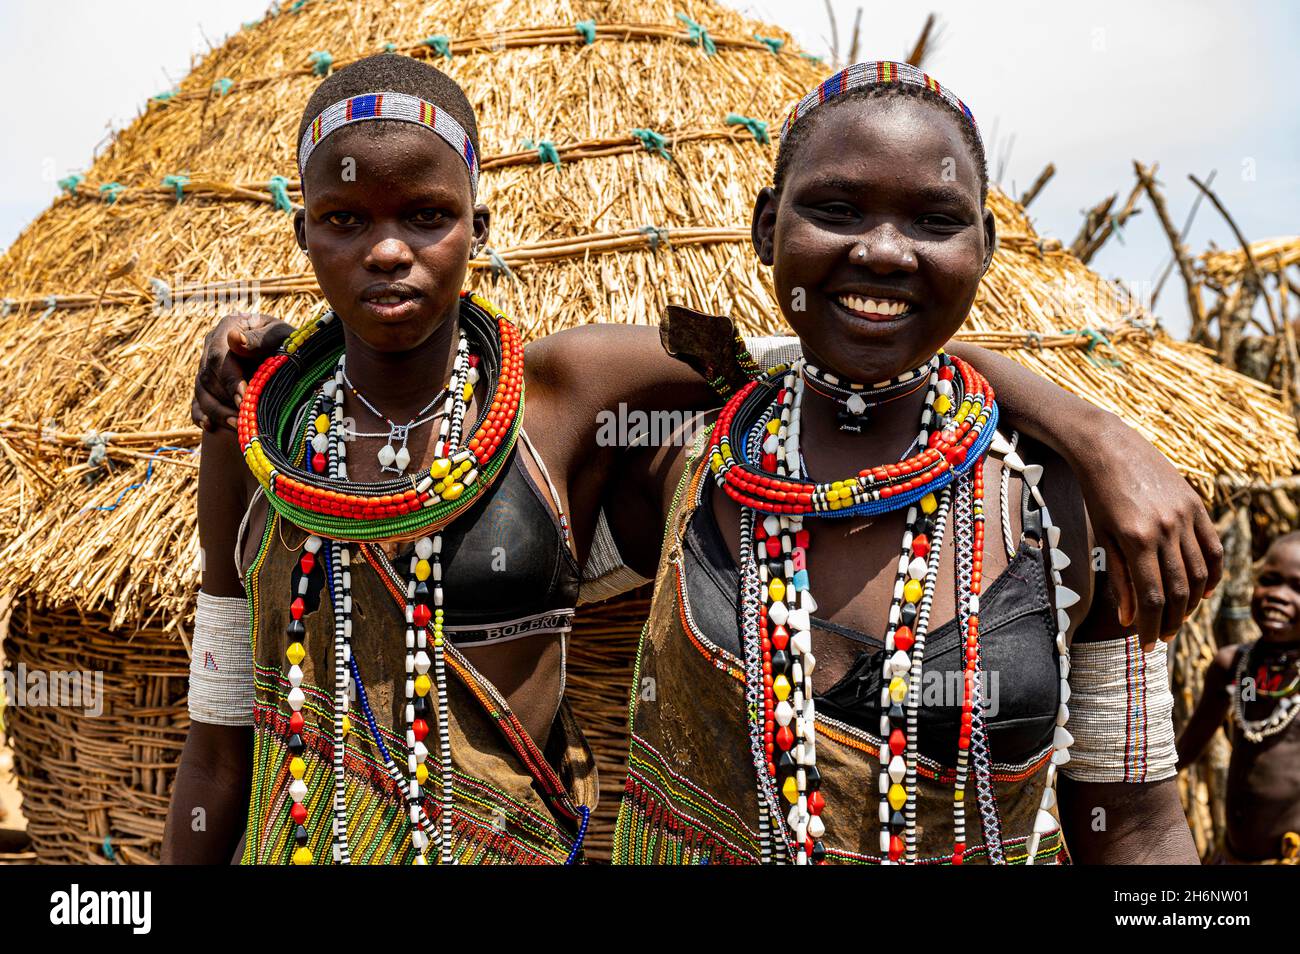 Traditionell gekleidete Mädchen aus dem Stamm der Toposa, Eastern Equatoria, Südsudan Stockfoto